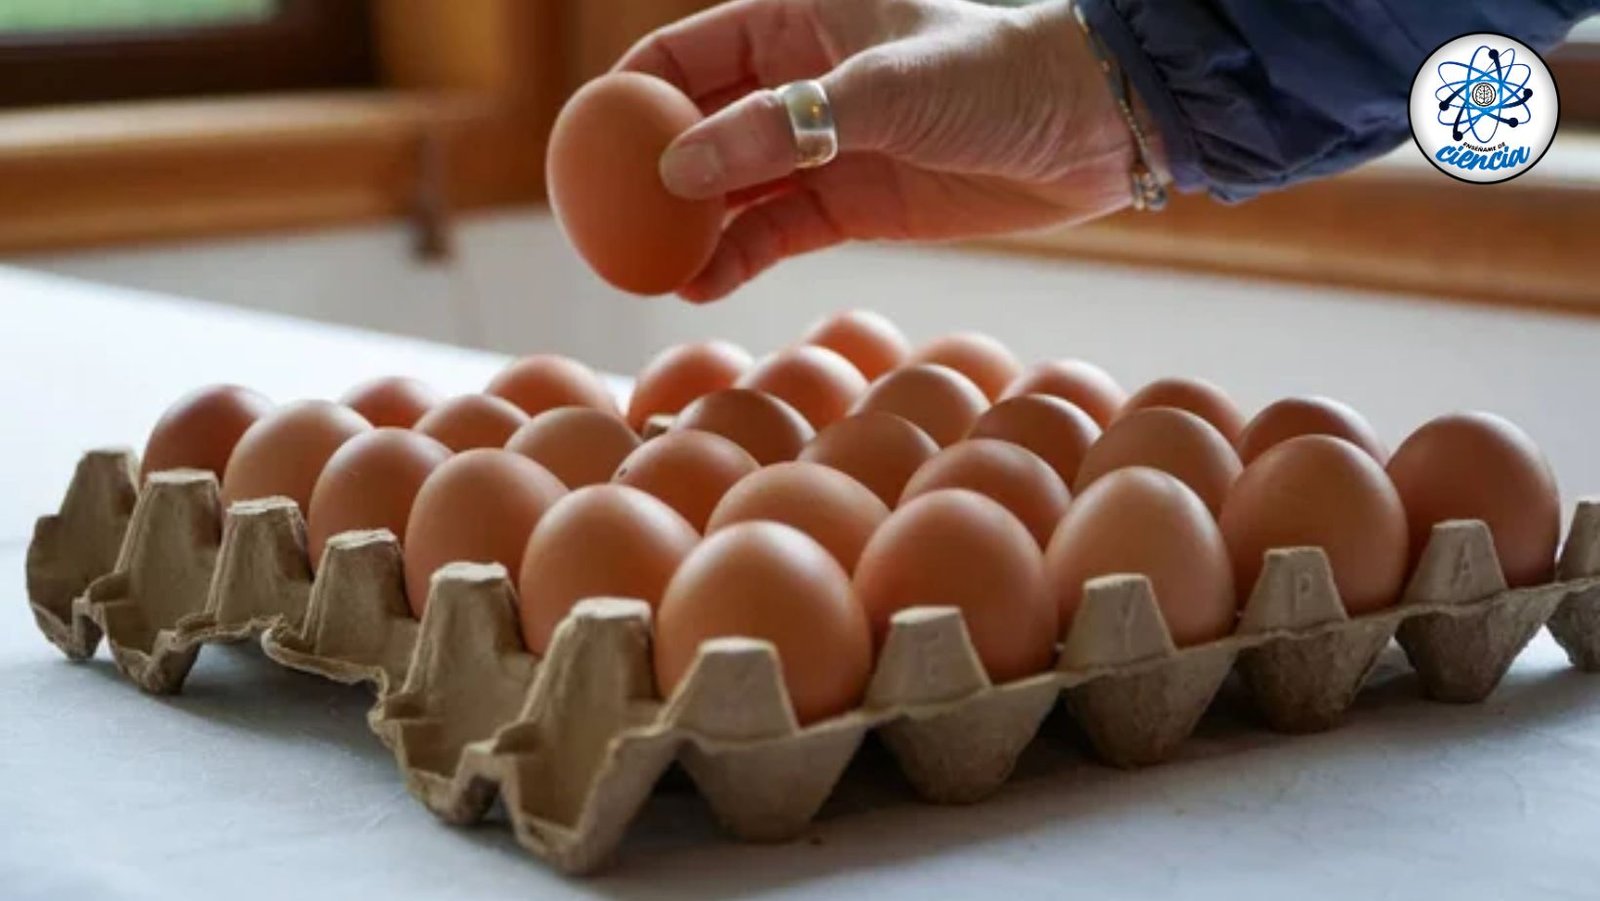 Descubre el Lugar Óptimo para Conservar tus Huevos: Guía Científica para su Almacenamiento Seguro